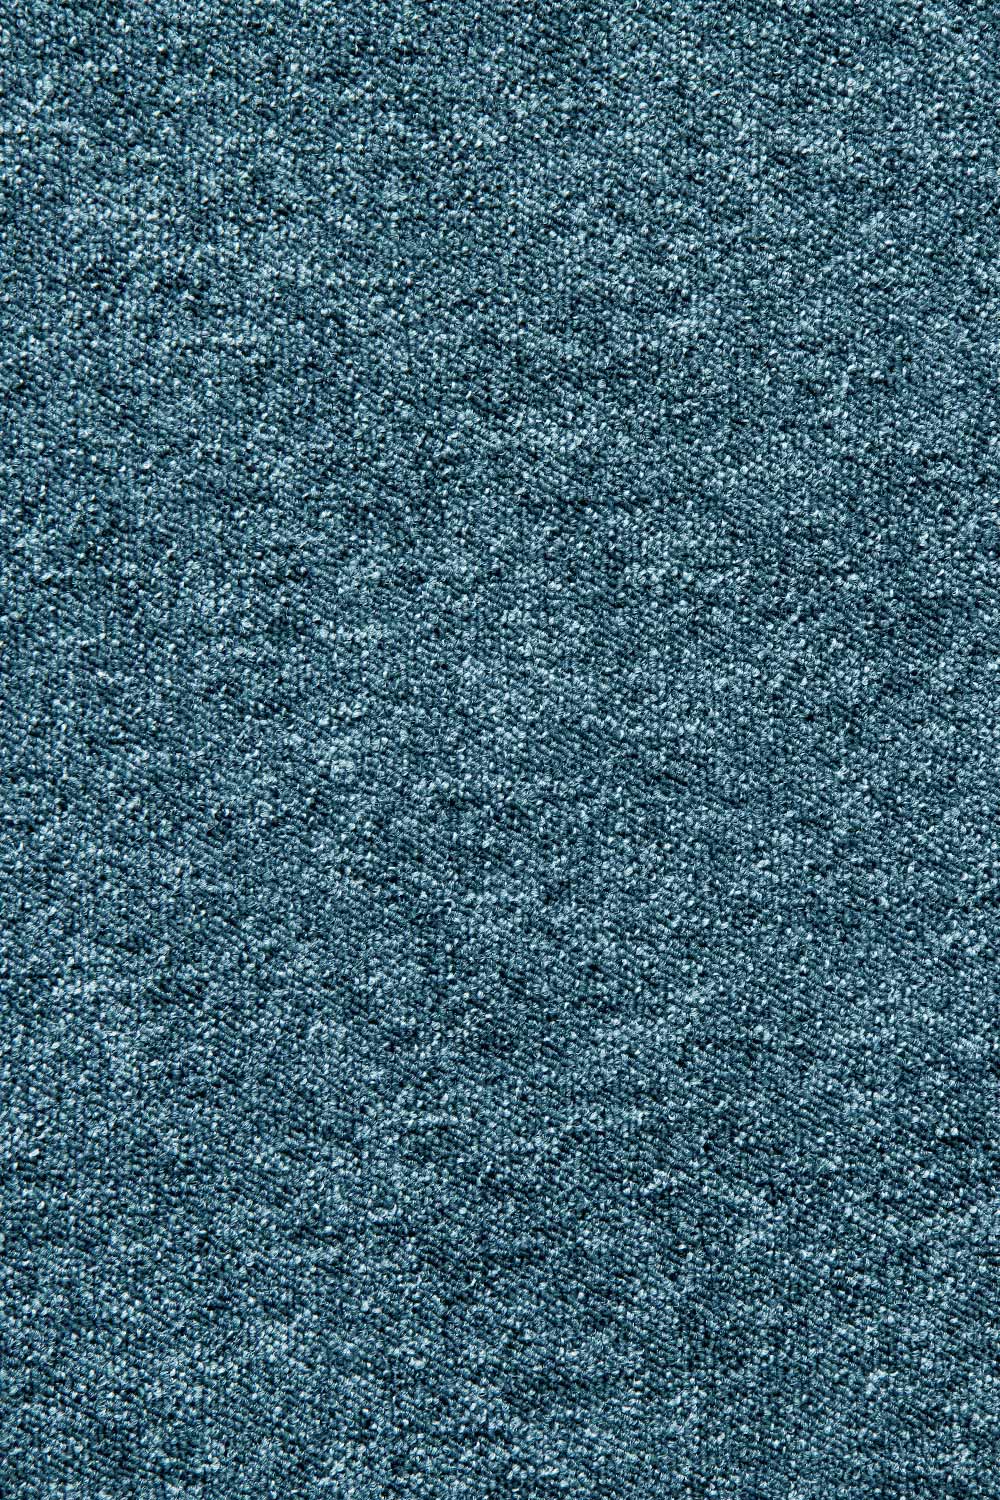 Metrážny koberec Lyon Solid 82